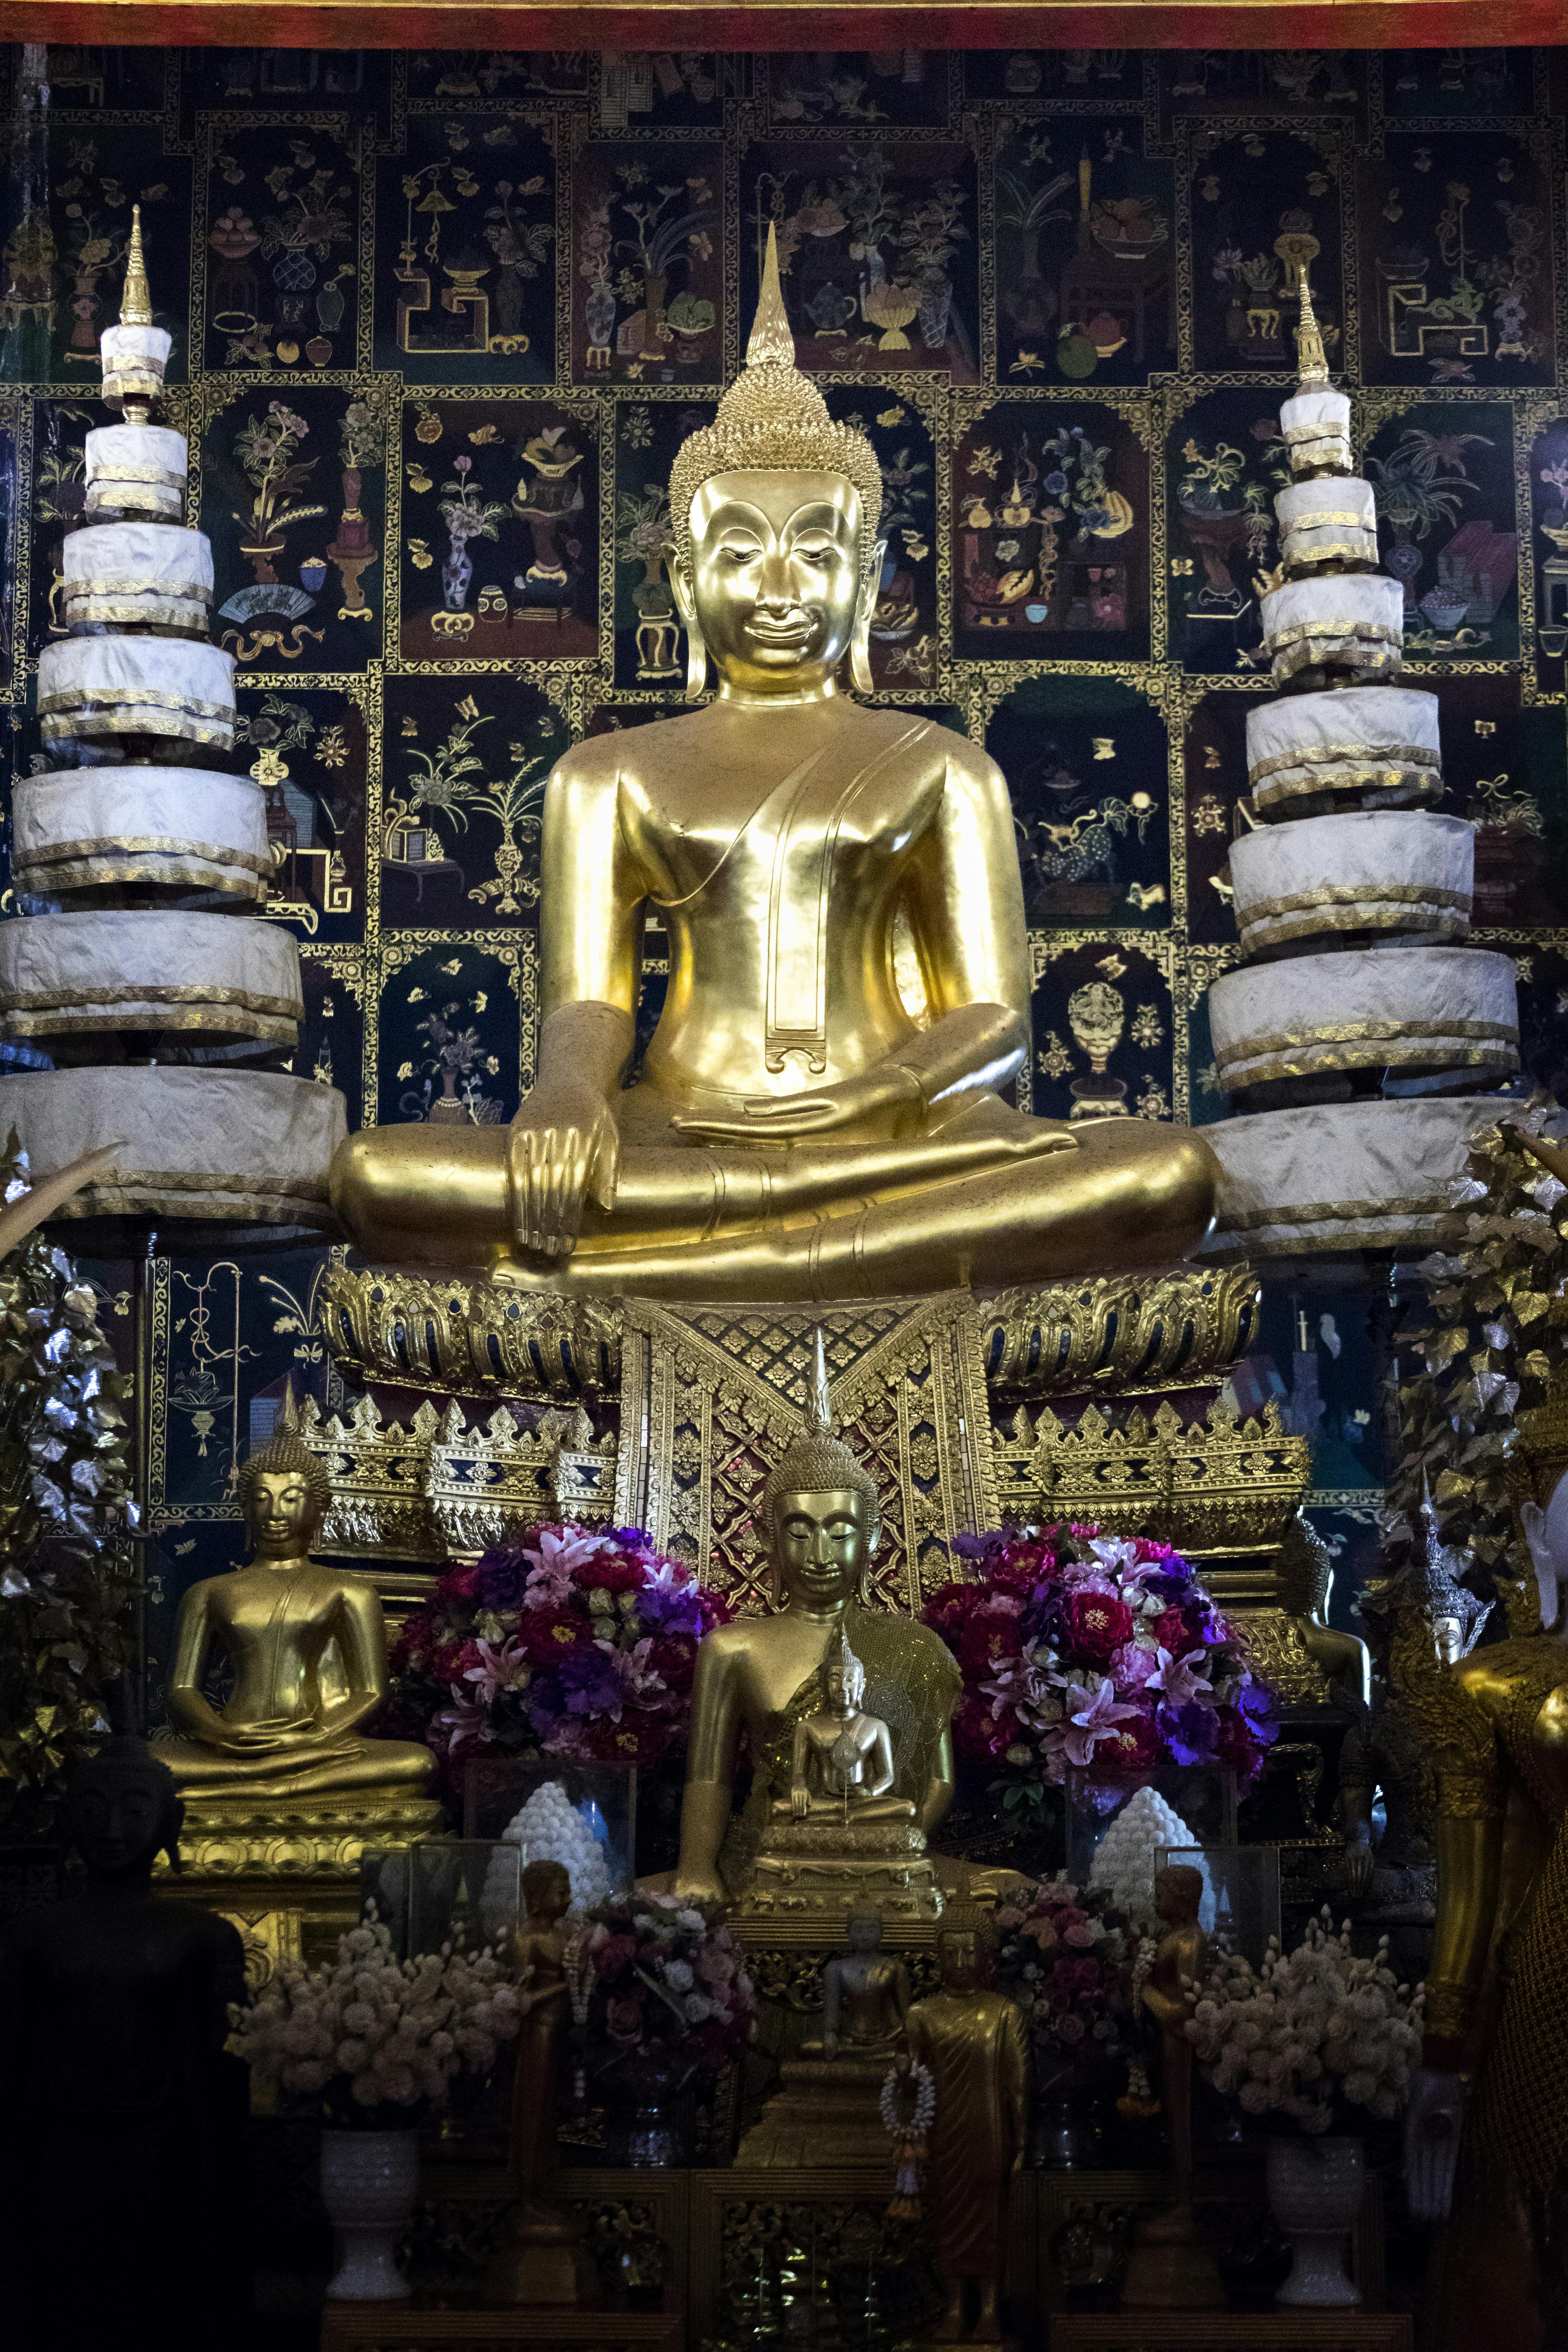 Die einstige Königsstadt Ayutthaya entdecken